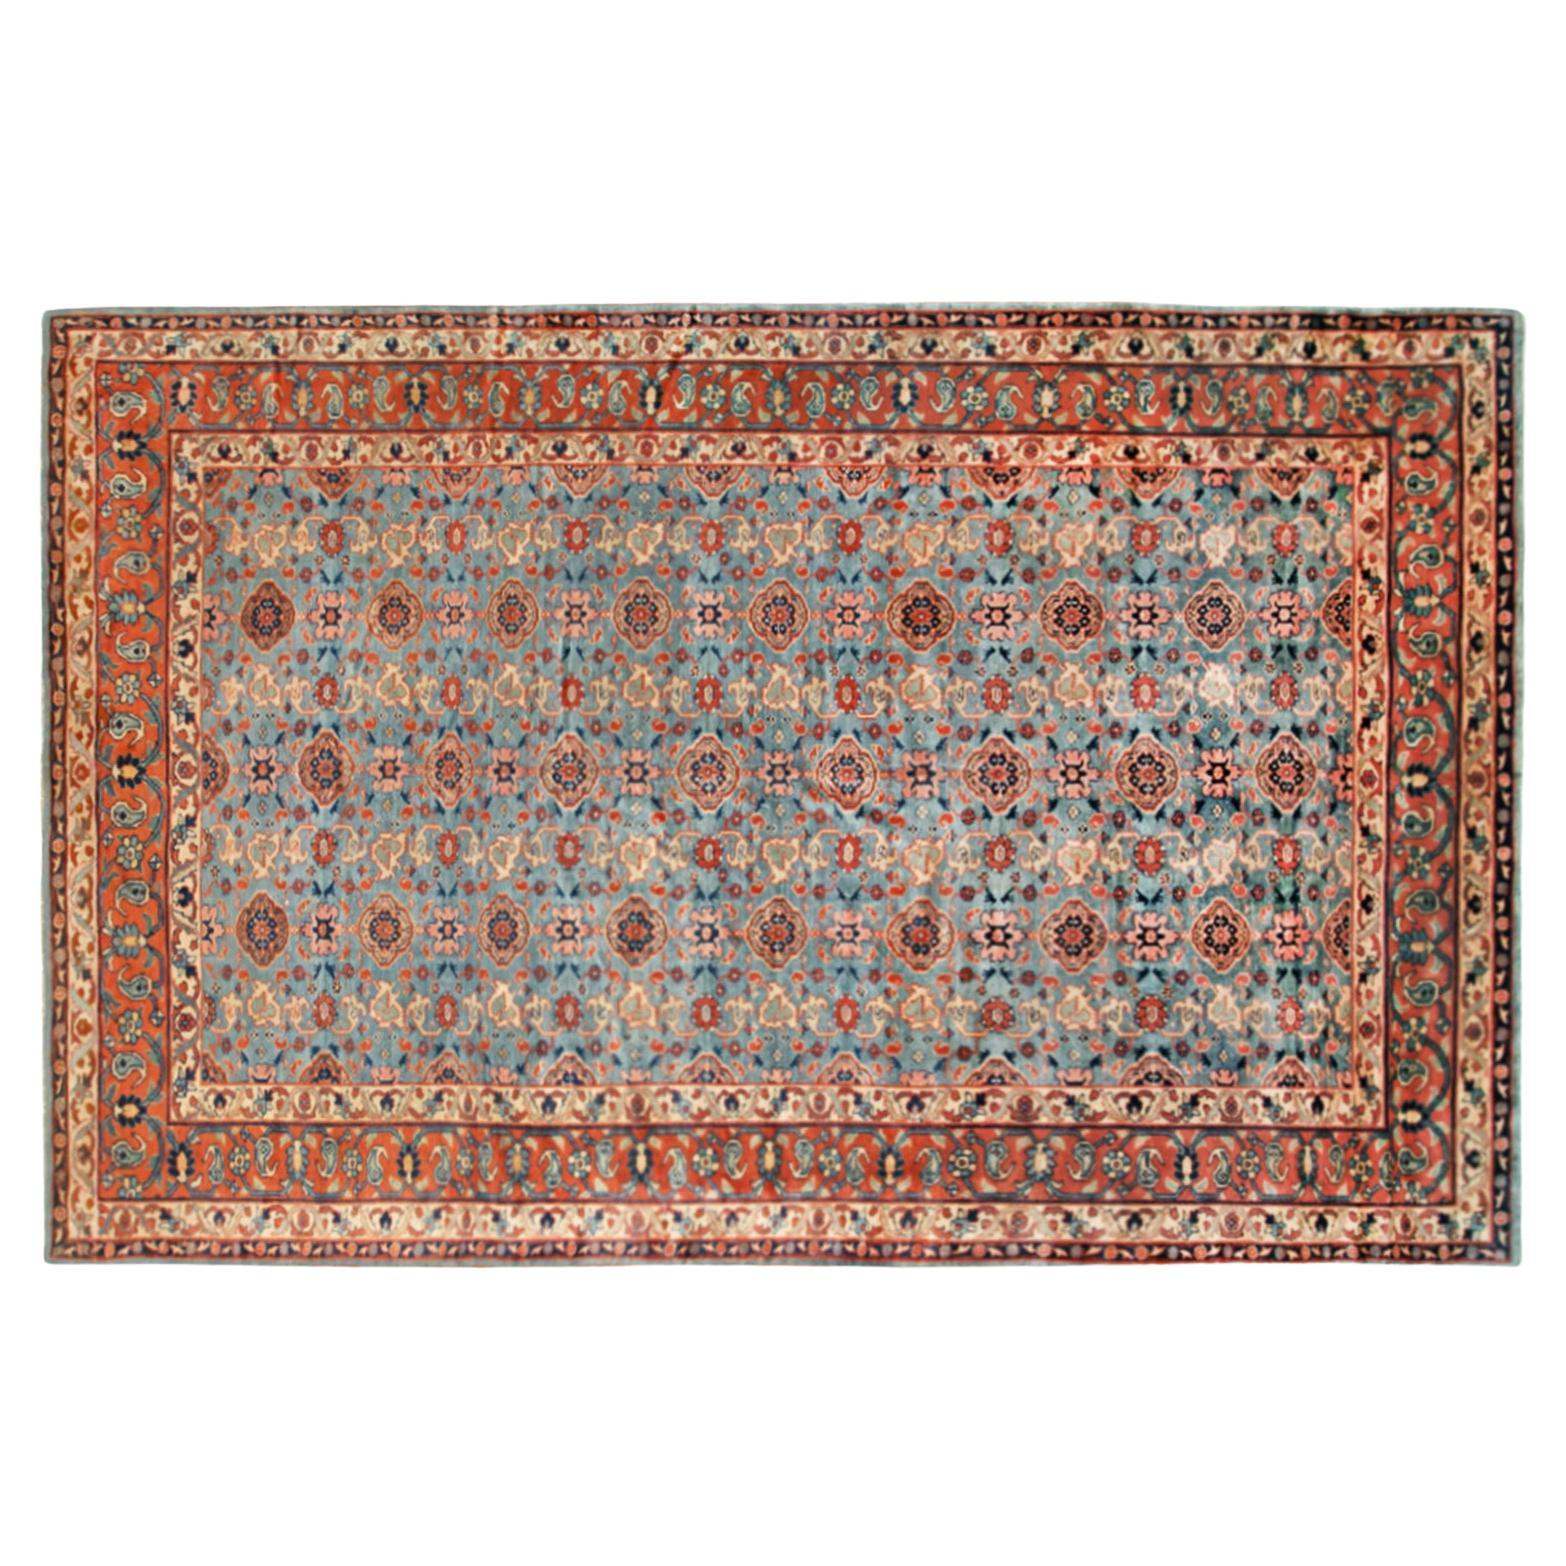 Antiker nordwestpersischer Orientteppich, in Zimmergröße, mit sich wiederholendem Muster